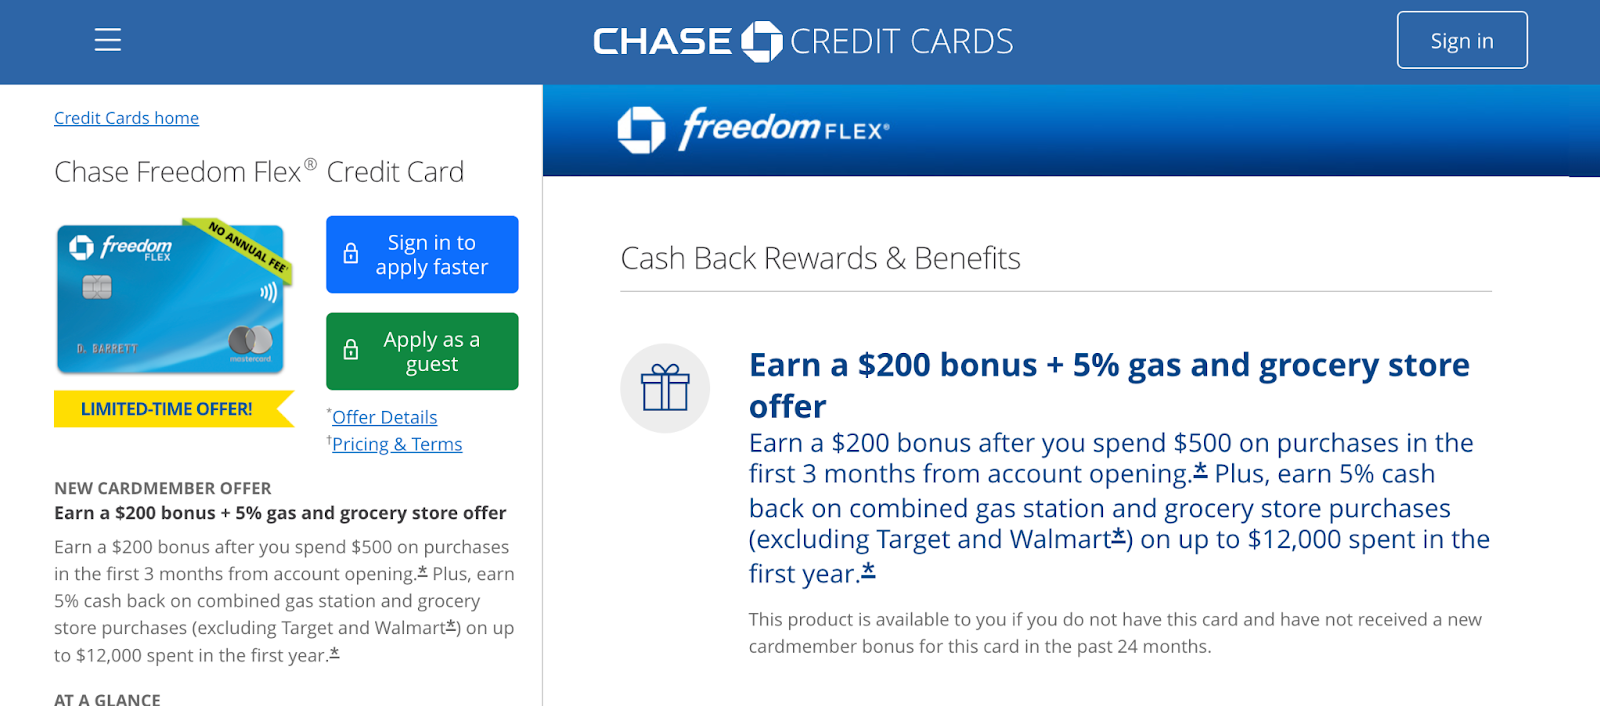 Chase Freedom Flex® Credit Card